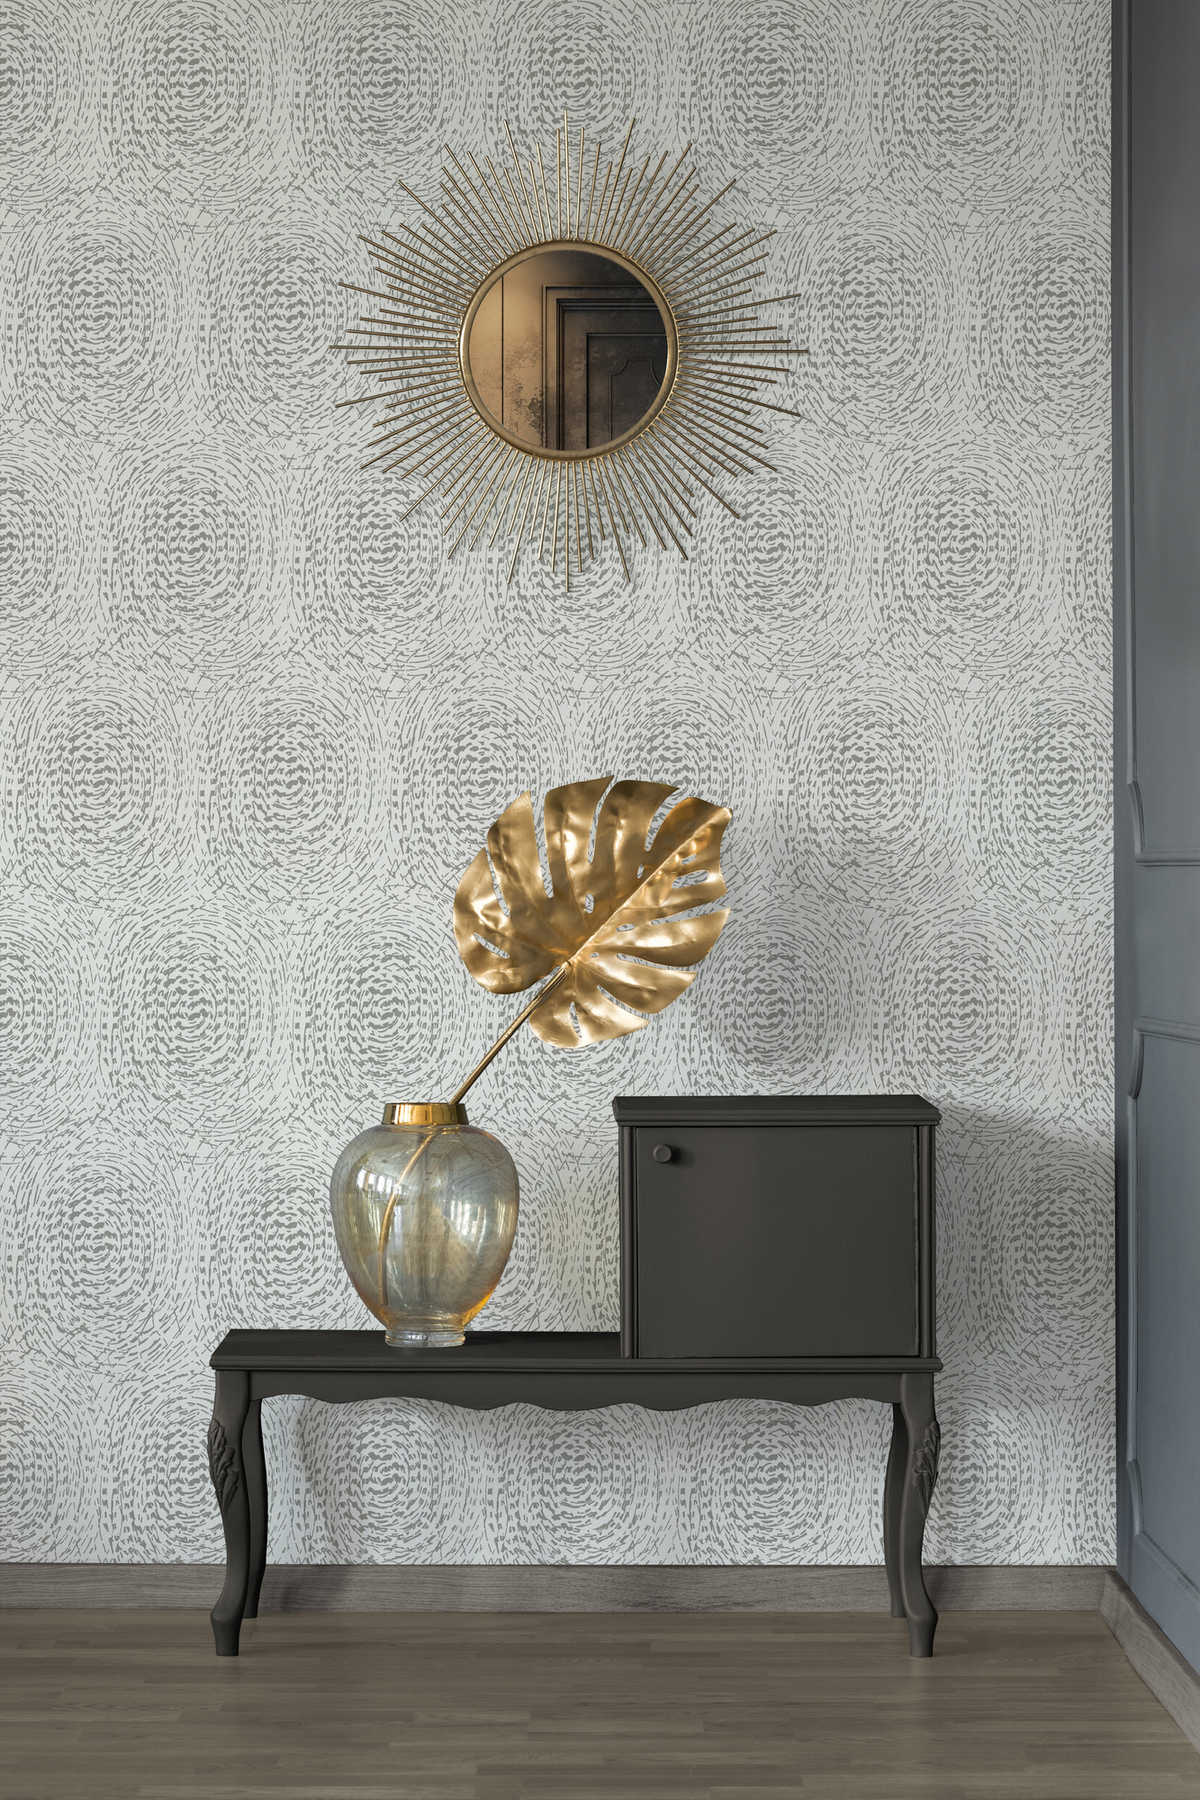             Tapete Ethno Design mit Metallic Farbe & Strukturdesign – Silber, Weiß
        